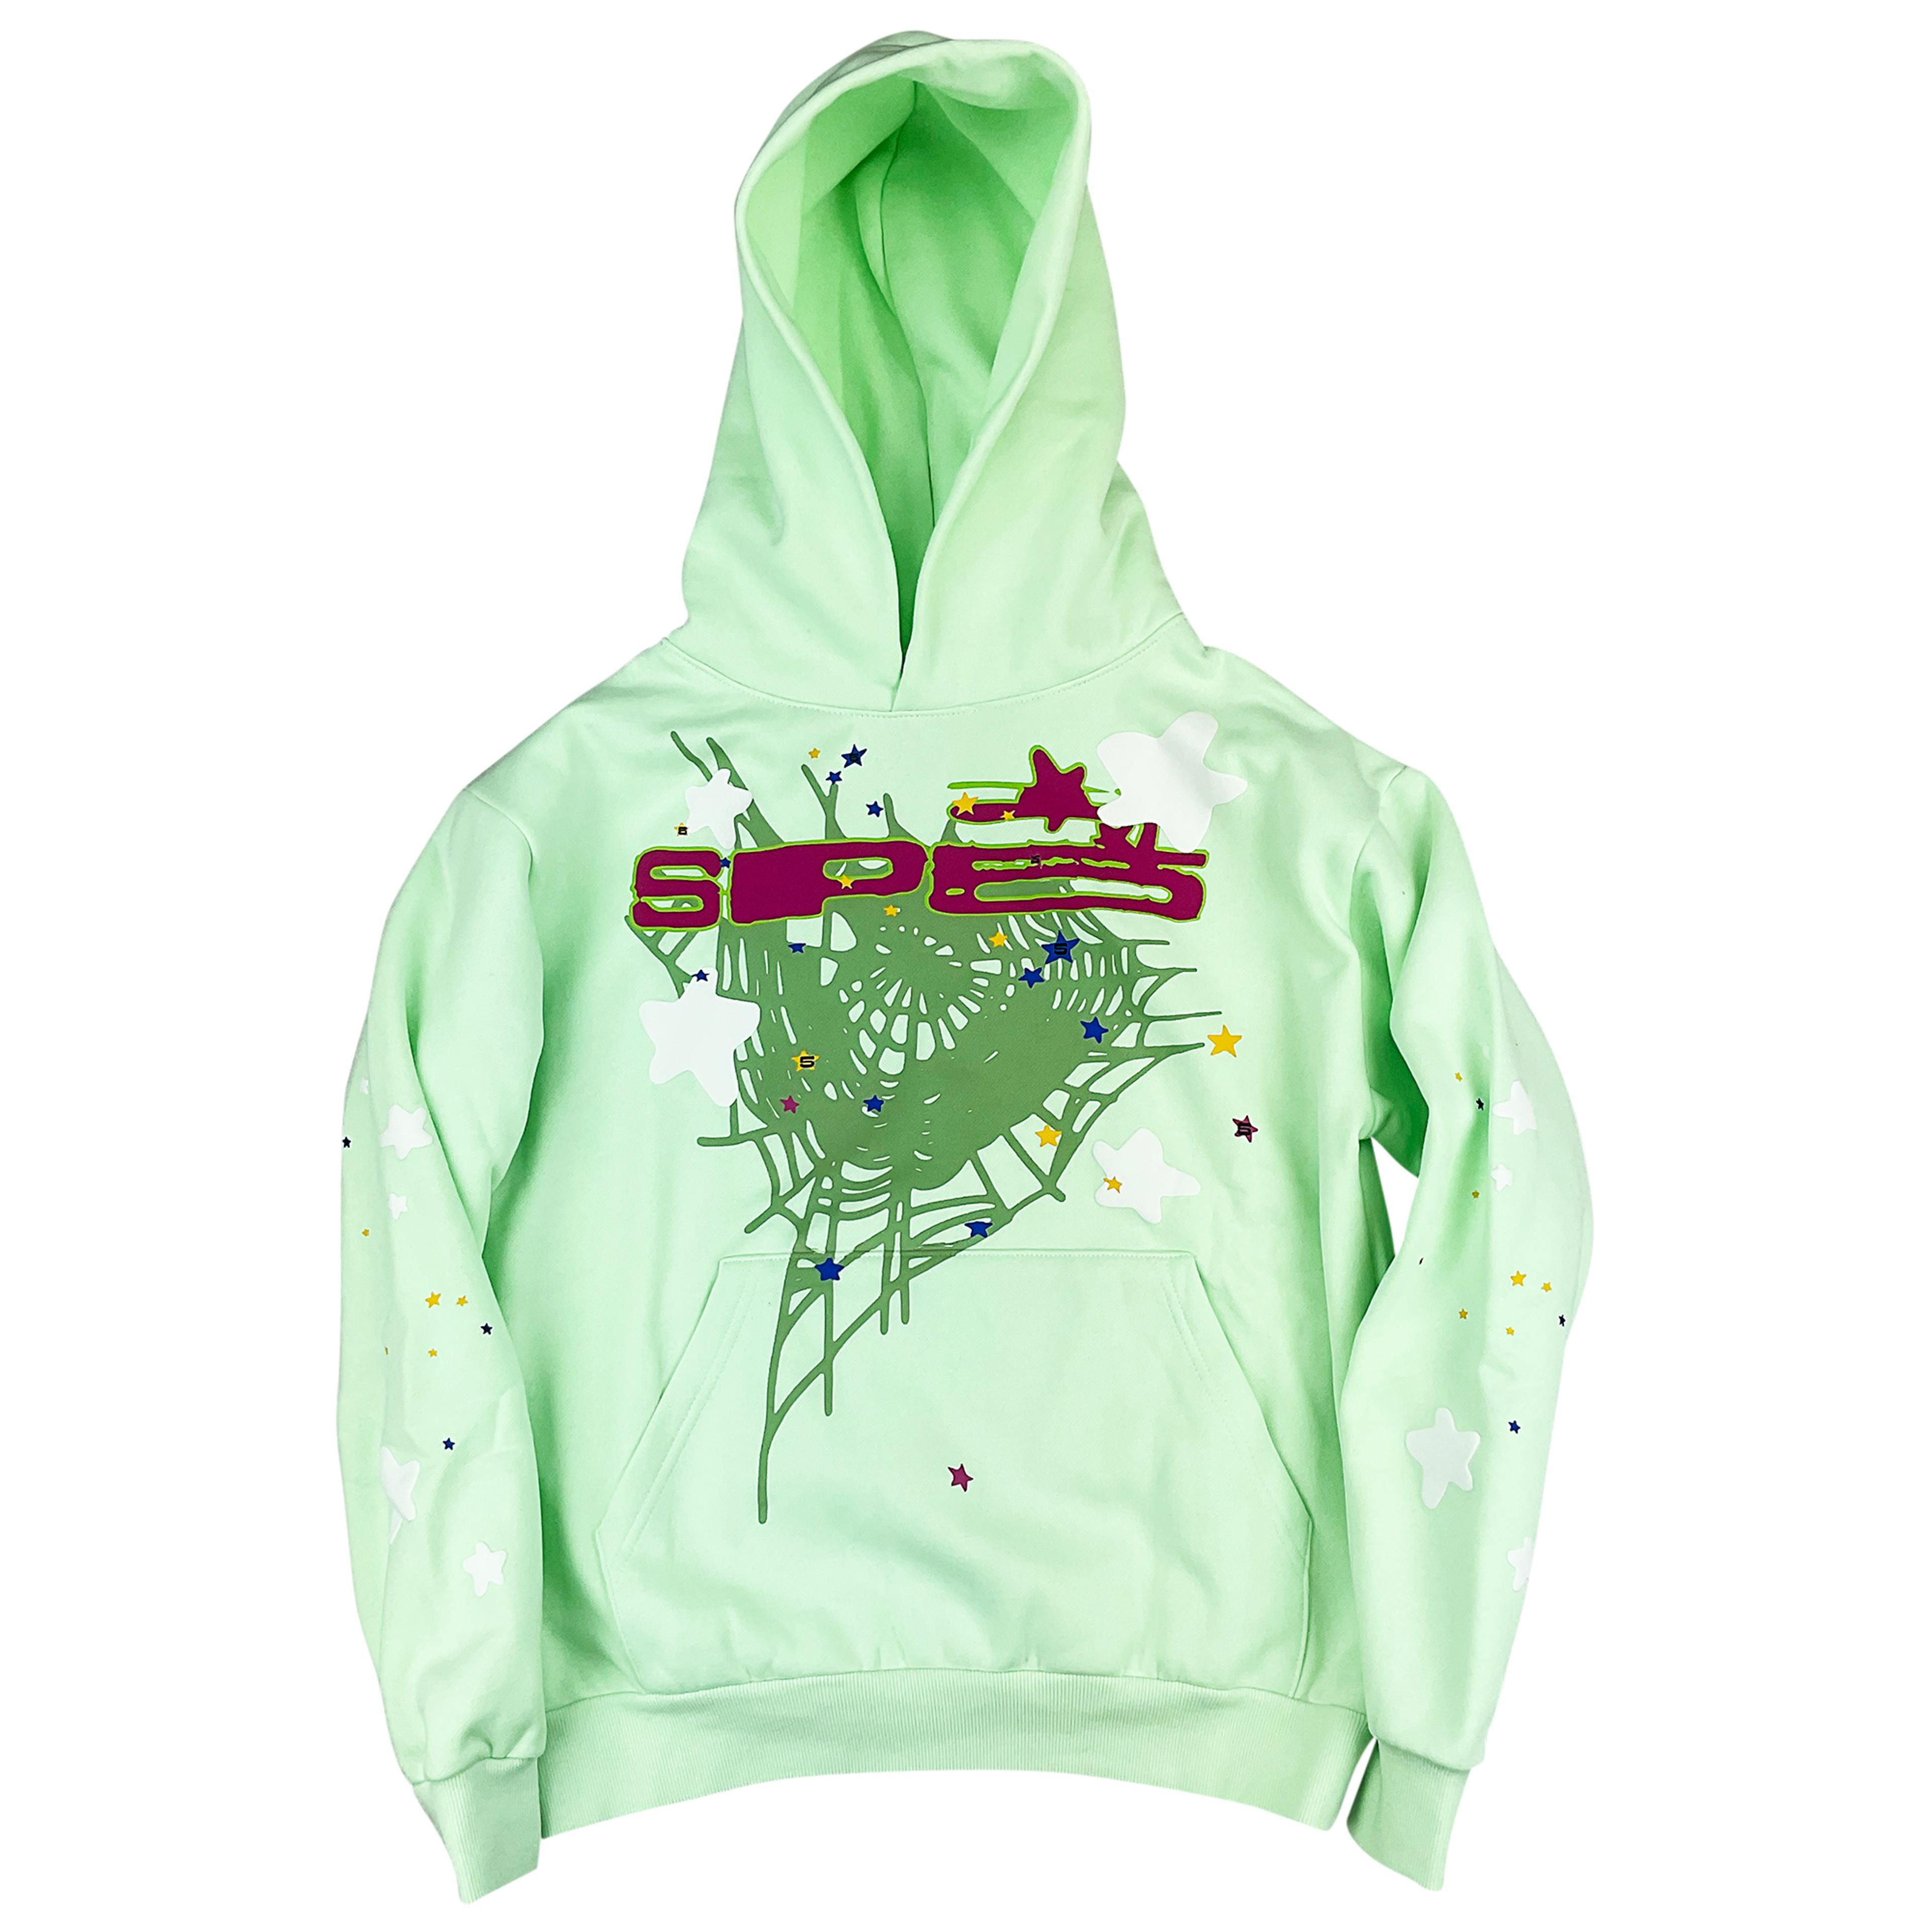 Sp5der SP5 Hoodie Sweatshirt Mint Green | Spider Worldwide